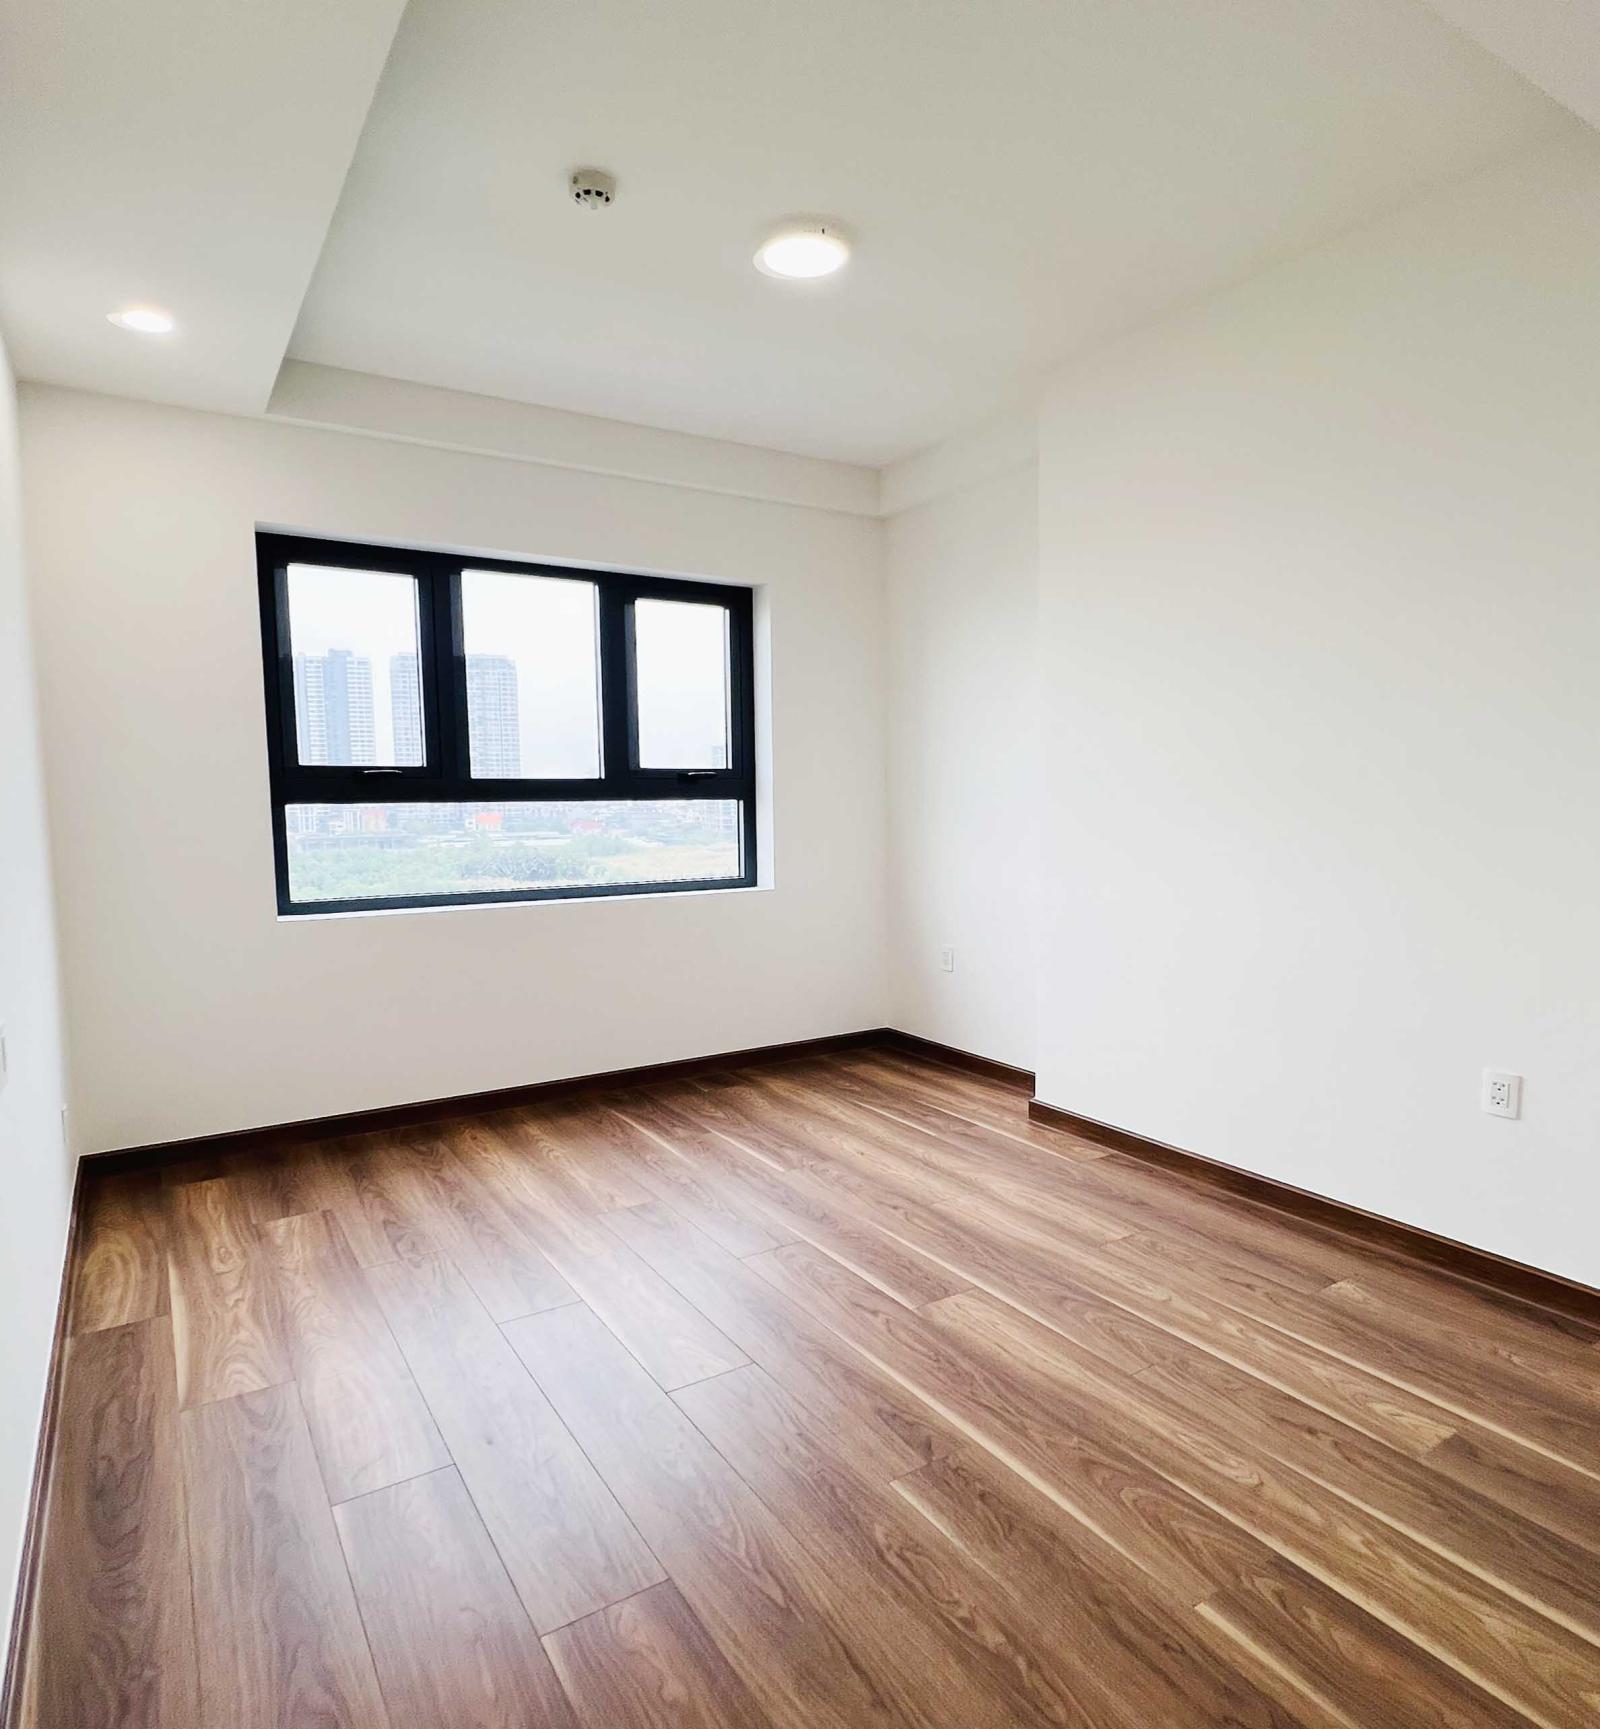 Chính chủ bán căn hộ View Sông 2PN nhà mới 100% ở ngay, căn hộ Smart Home điều khiển từ xa